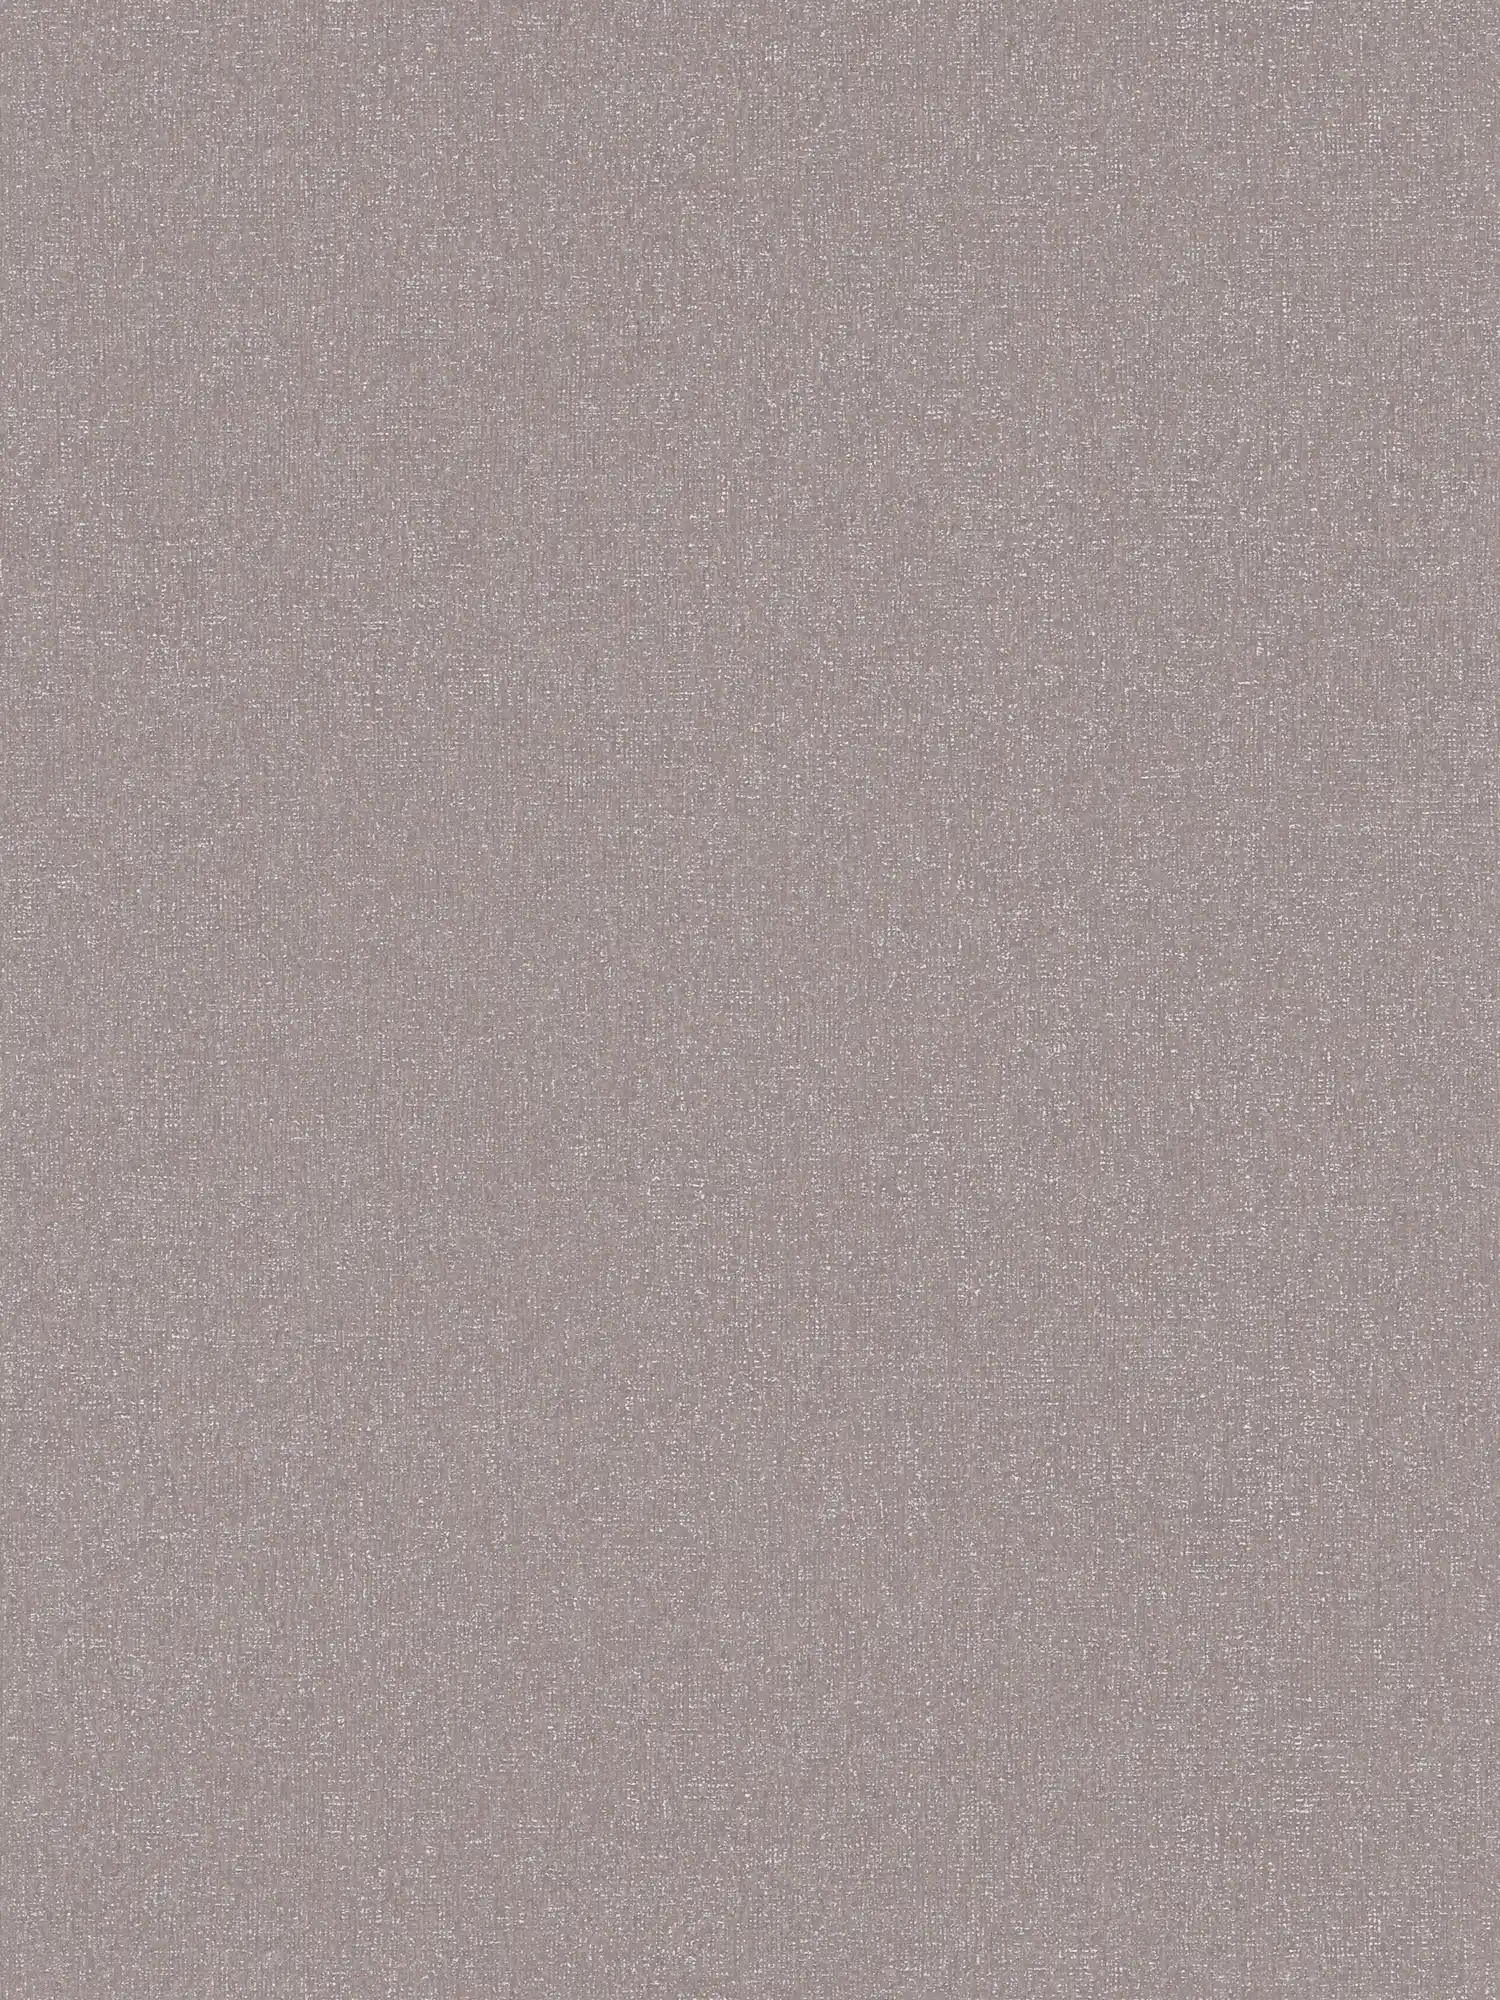 Papel pintado no tejido liso con estructura fina - gris, , marrón
